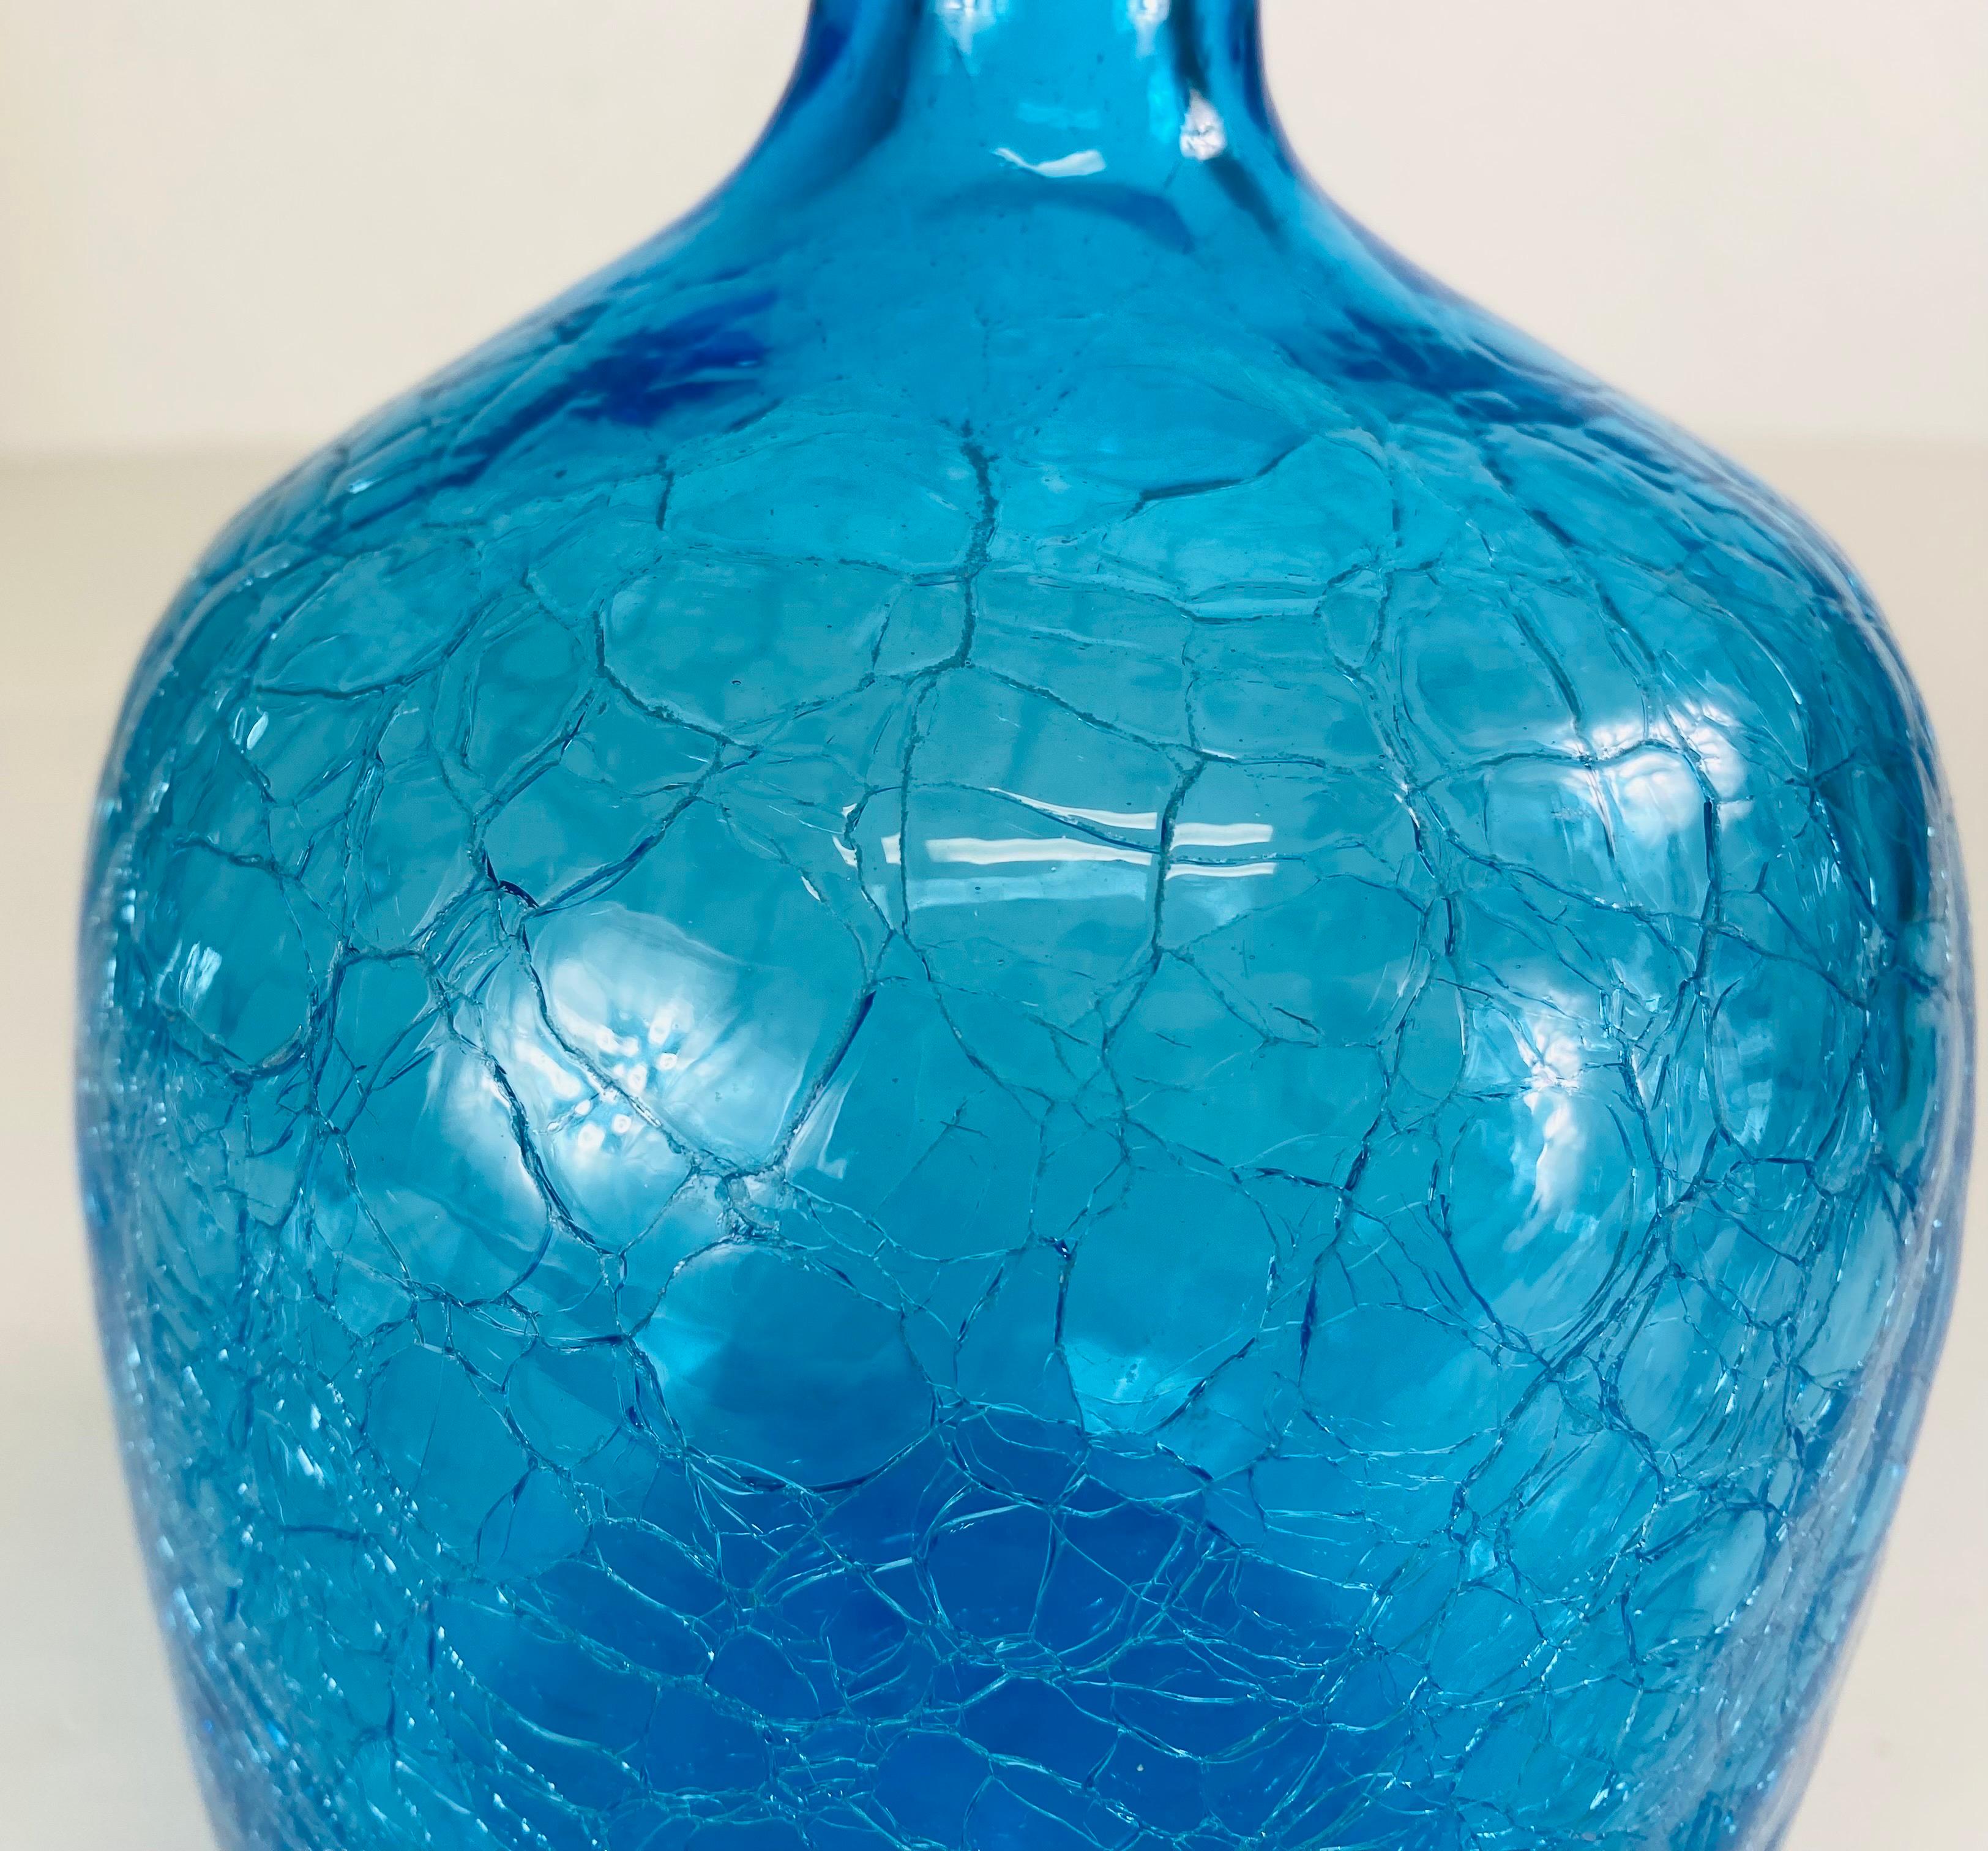 Dies ist eine große Mitte des Jahrhunderts Vintage Blenko blauen Glasgefäß mit seinem ursprünglichen Stopfen. Dieser blaue Krug hat eine stark gekräuselte Oberfläche und ist komplett mit seinem originalen hohen blauen Stopfen. Das Blanco-Glas mit